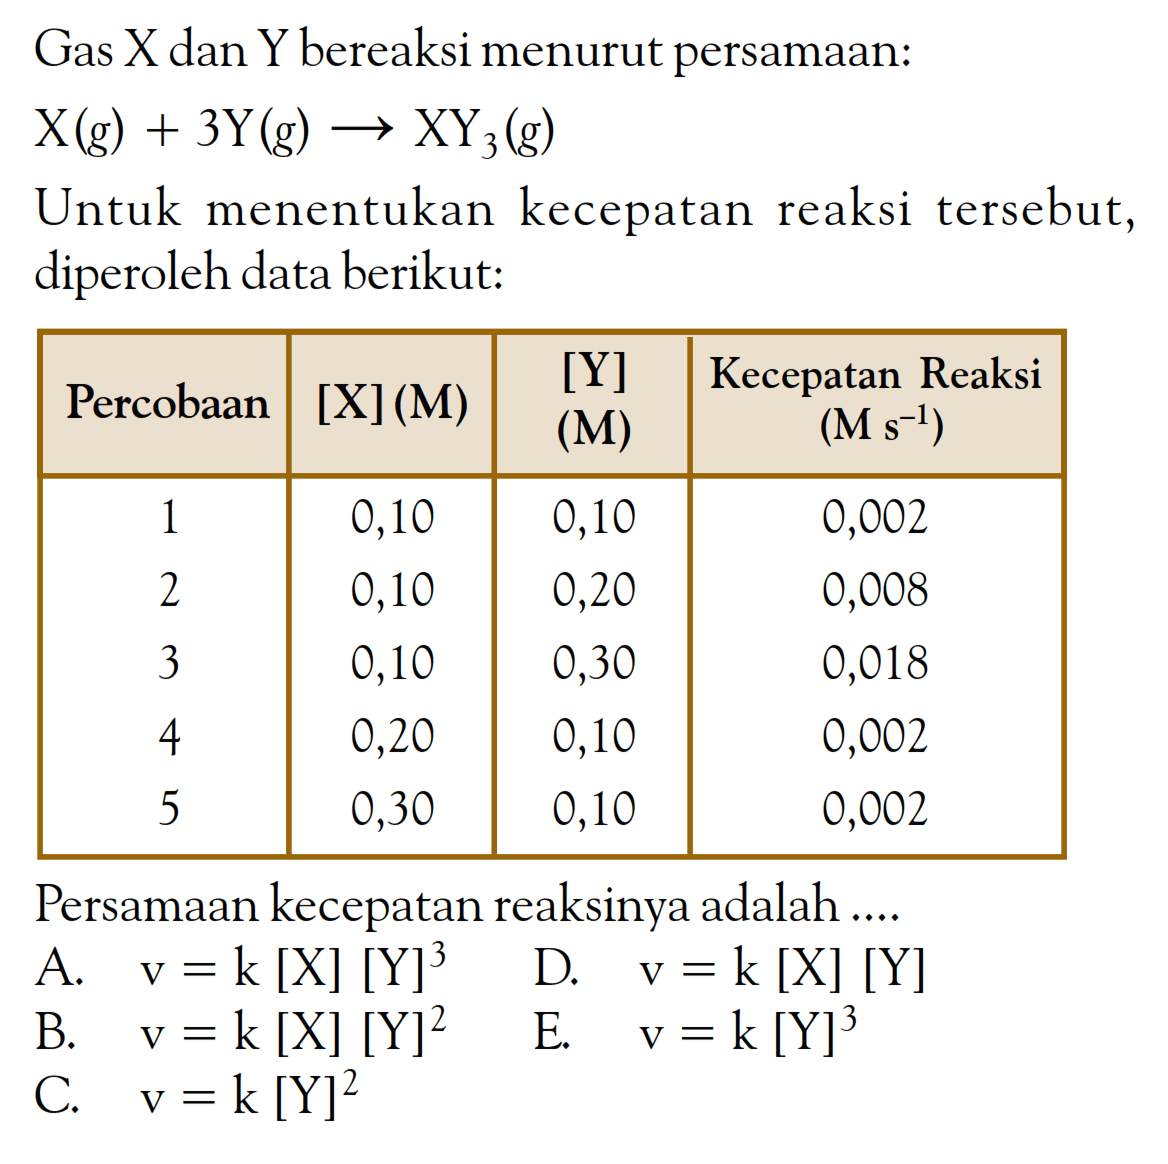 Gas X dan Y bereaksi menurut persamaan: X (g) + 3Y (g) -> XY3 (g) Untuk menentukan kecepatan reaksi tersebut, diperoleh data berikut: Percobaan [X] (M) [Y] (M) Kecepatan Reaksi (M s^(-1)) 1 0,10 0,10 0,002 2 0,10 0,20 0,008 3 0,10 0,30 0,018 4 0,20 0,10 0,002 5 0,30 0,10 0,002 Persamaan kecepatan reaksinya adalah ....